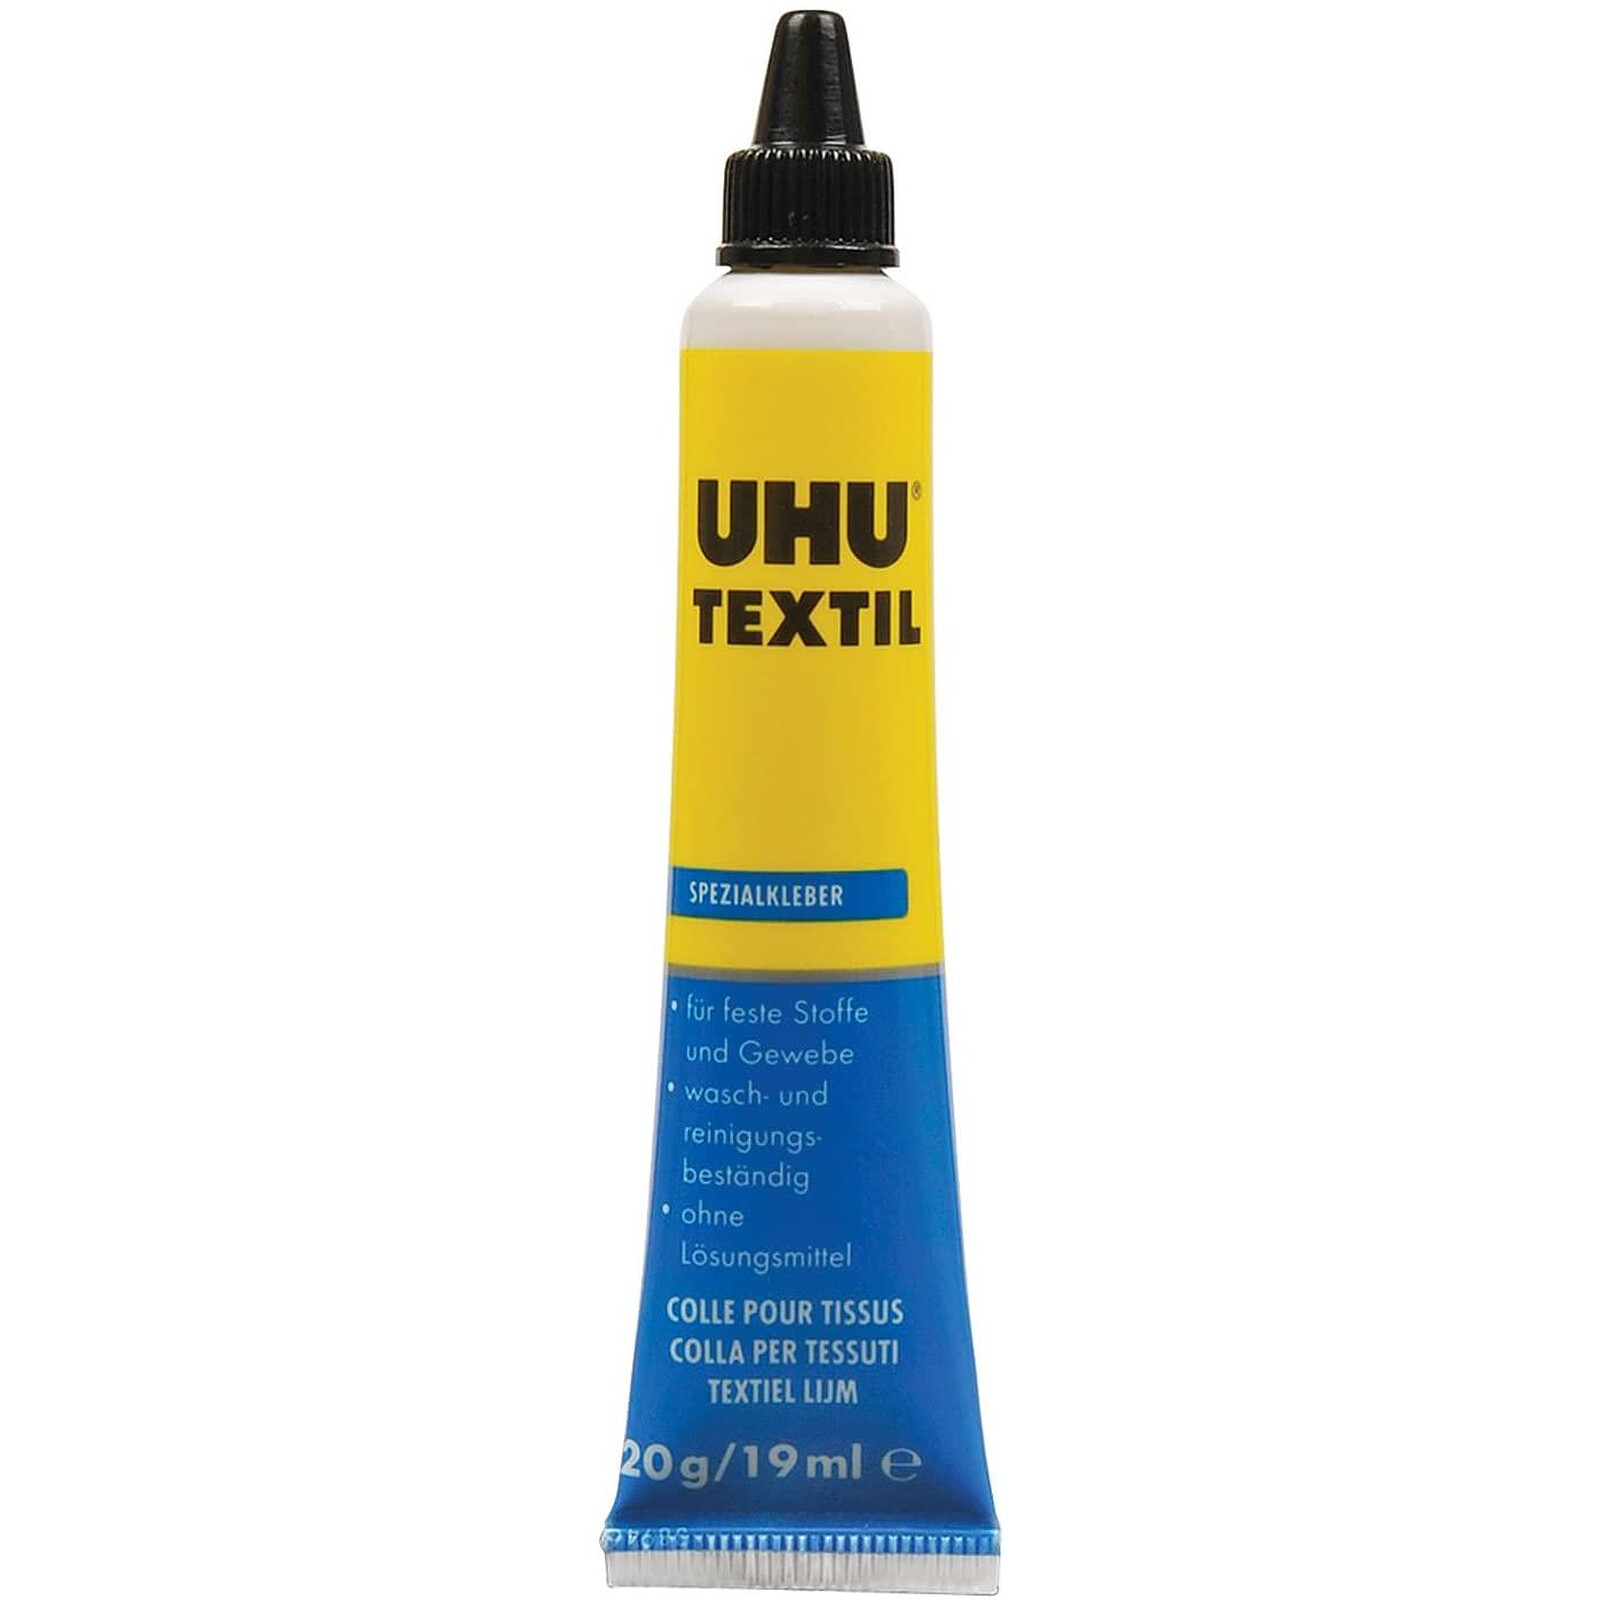 UHU Recharge 810 ml Colle Twist & Glue Sans Solvant - Ruban adhésif & colle  - LDLC